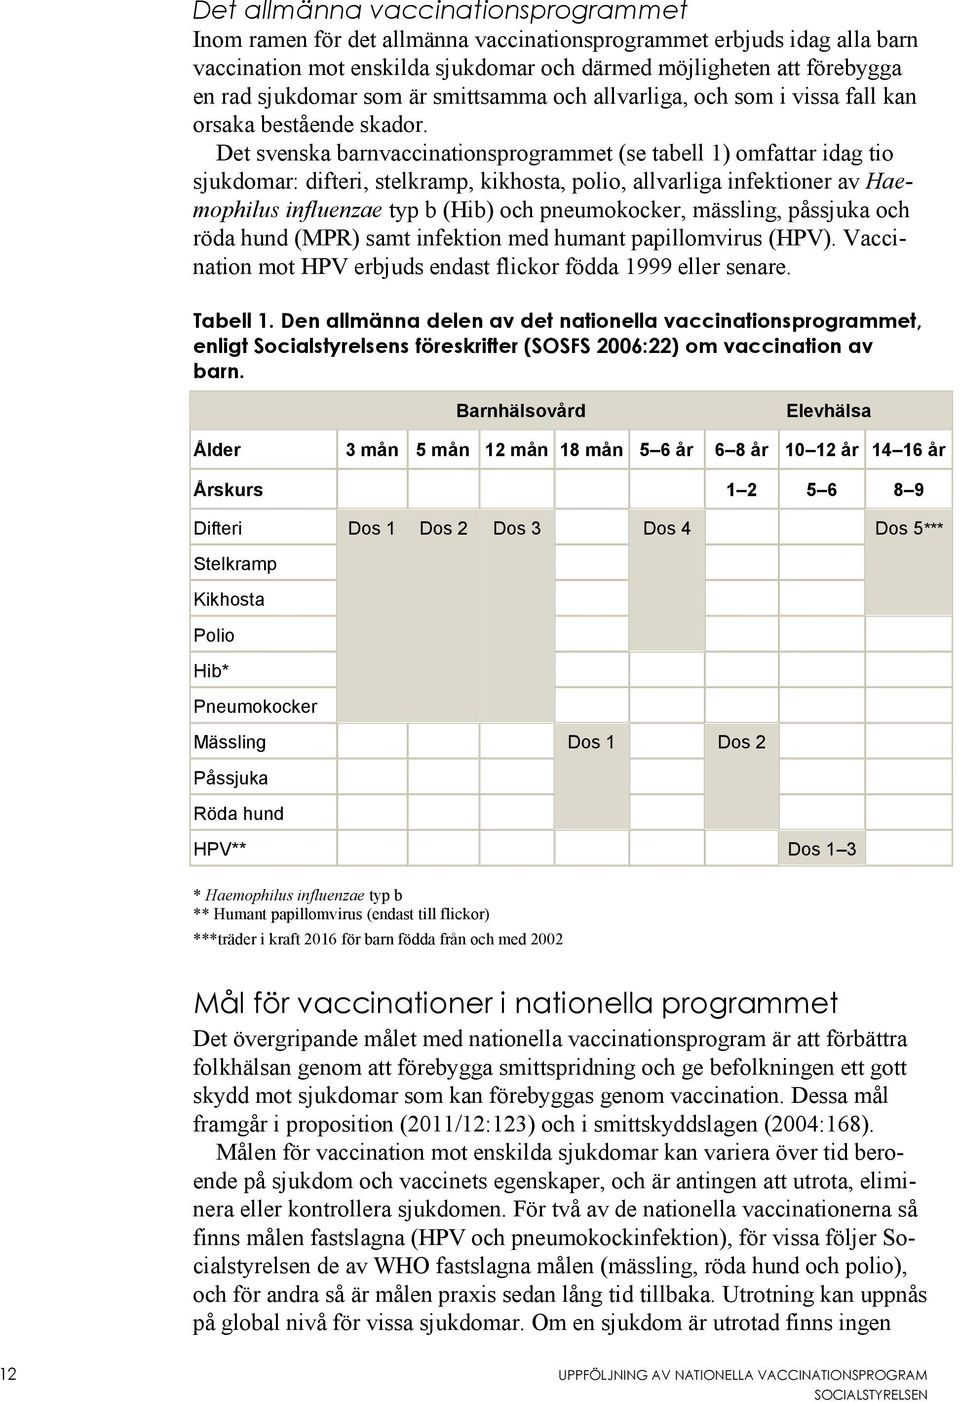 Det svenska barnvaccinationsprogrammet (se tabell 1) omfattar idag tio sjukdomar: difteri, stelkramp, kikhosta, polio, allvarliga infektioner av Haemophilus influenzae typ b (Hib) och pneumokocker,